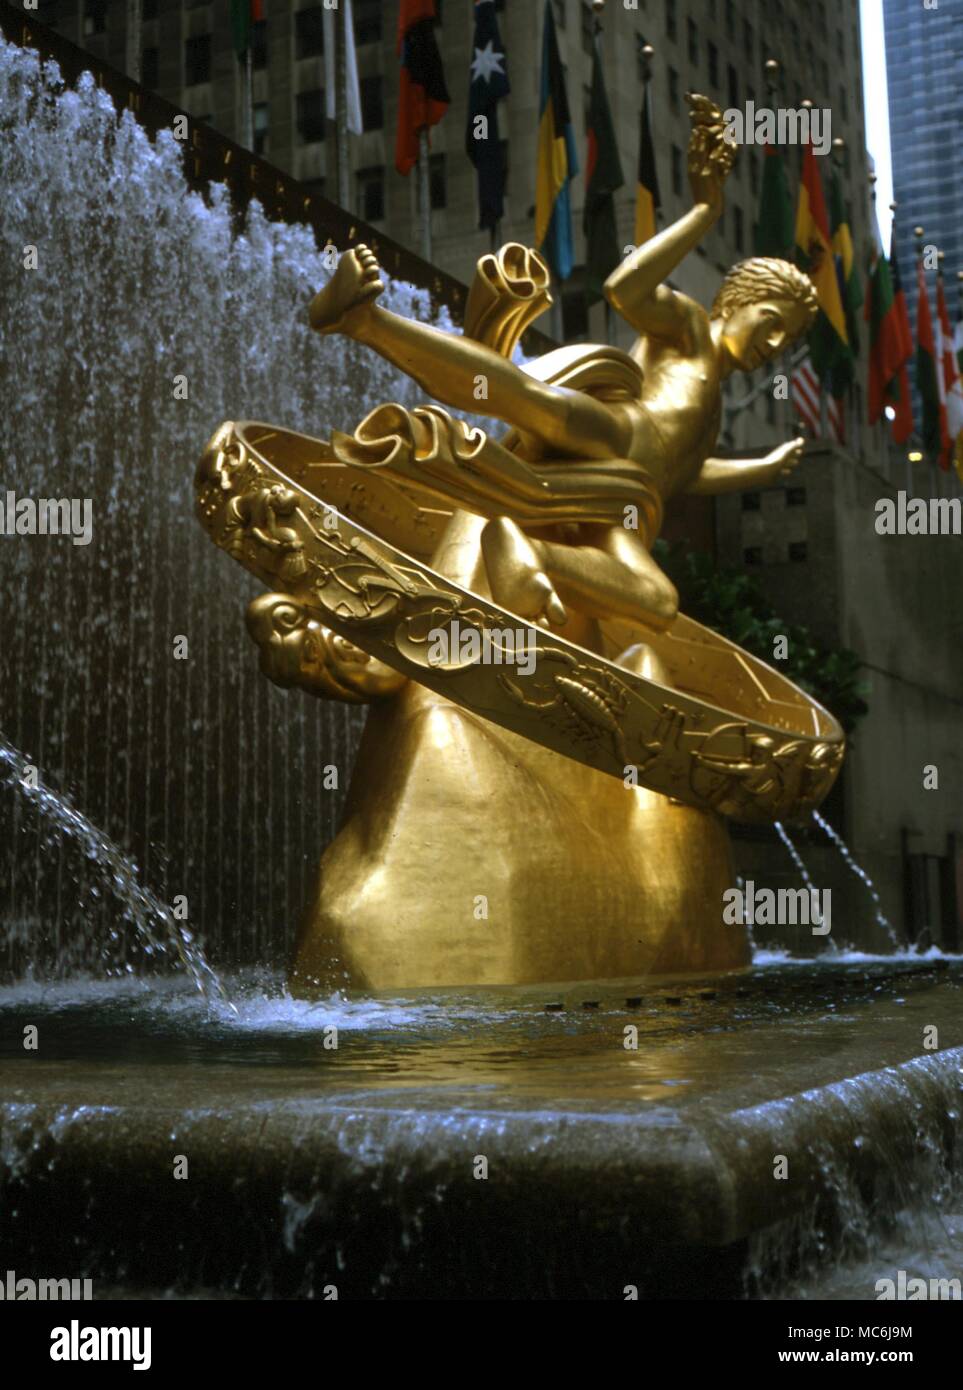 Astrologie. Bronze Skulptur Statue des Prometheus von Paul Manship, in Lowser PLAZA der Rockefeller Building, New York. Tierkreiszeichen und Siegel sind in Relief abgeholt Stockfoto